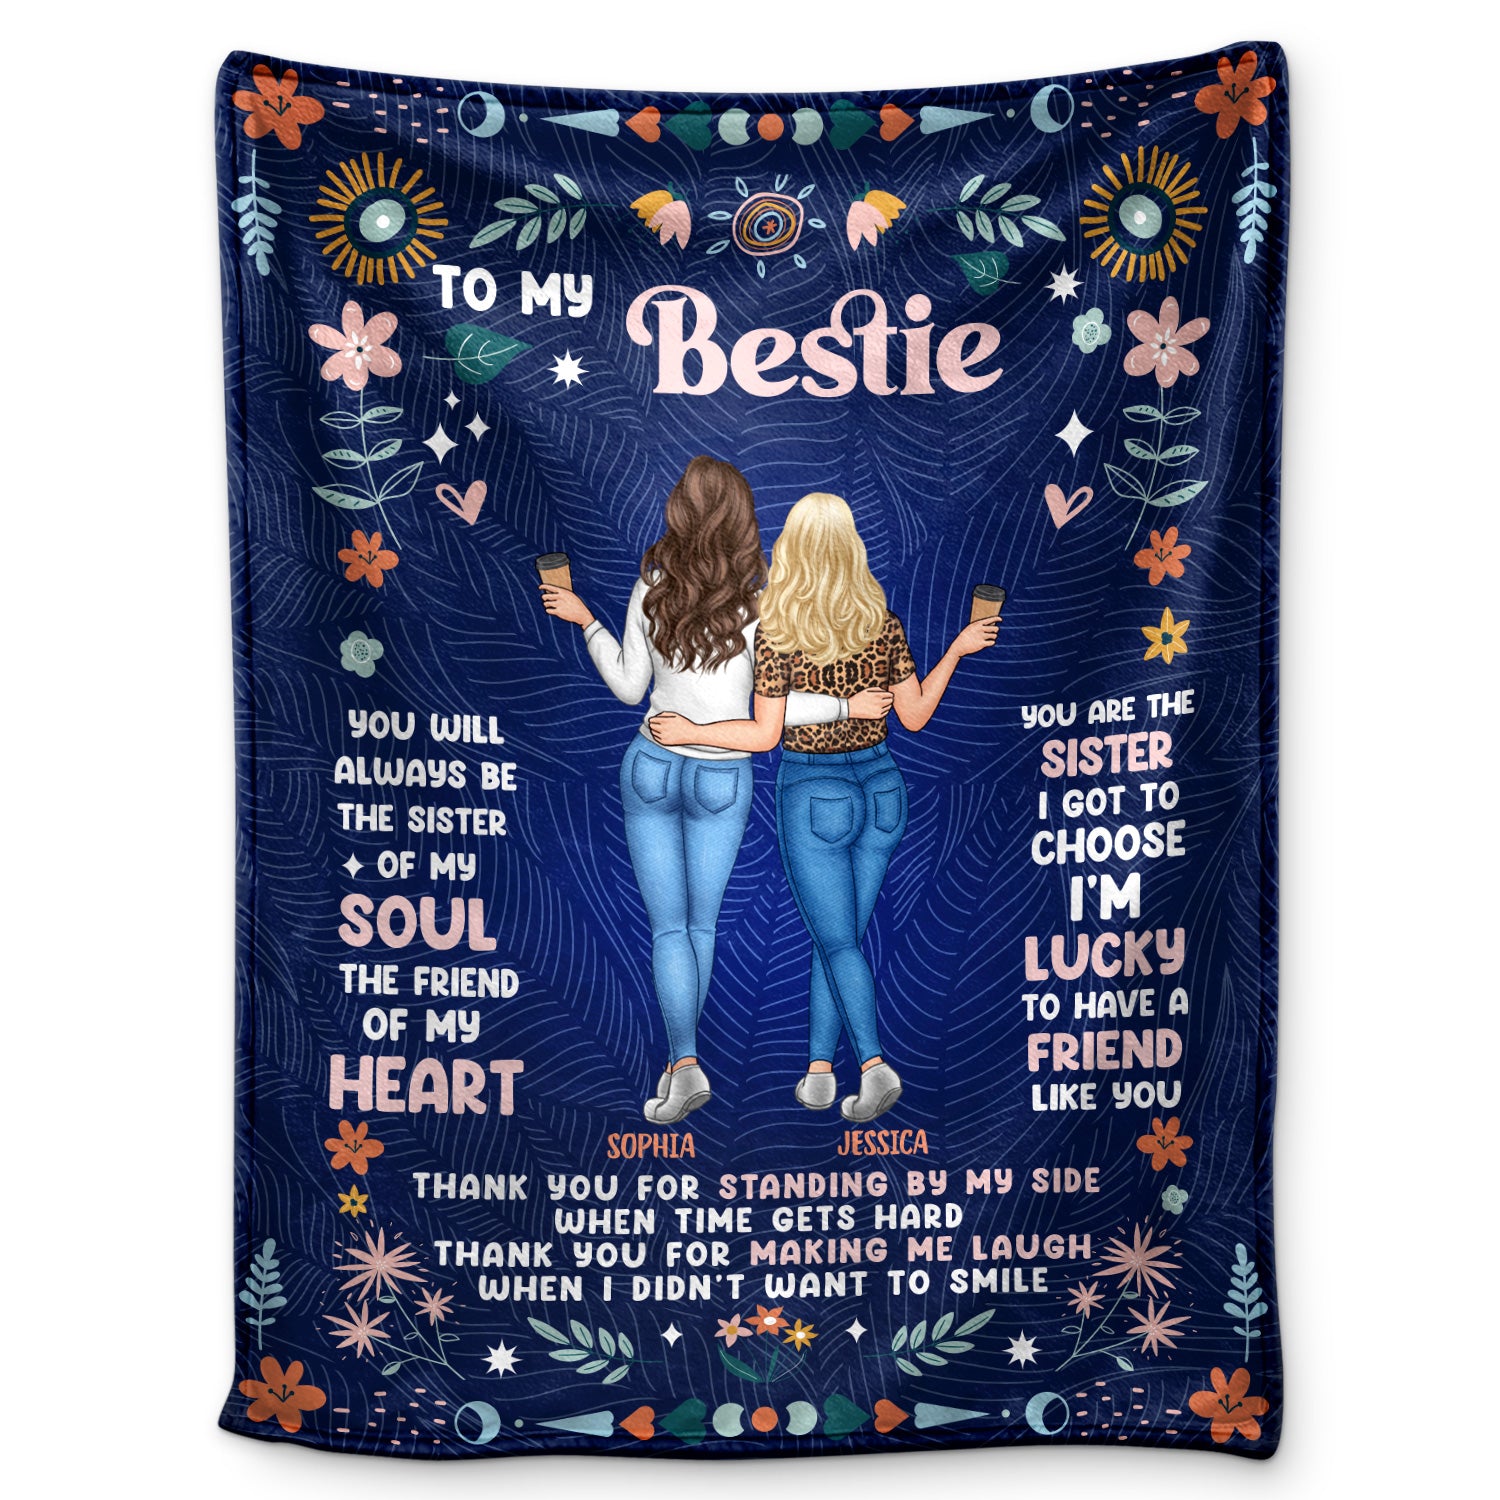 The Friend Of My Heart - Gift For Bestie, Sister, Women - Personalized Fleece Blanket